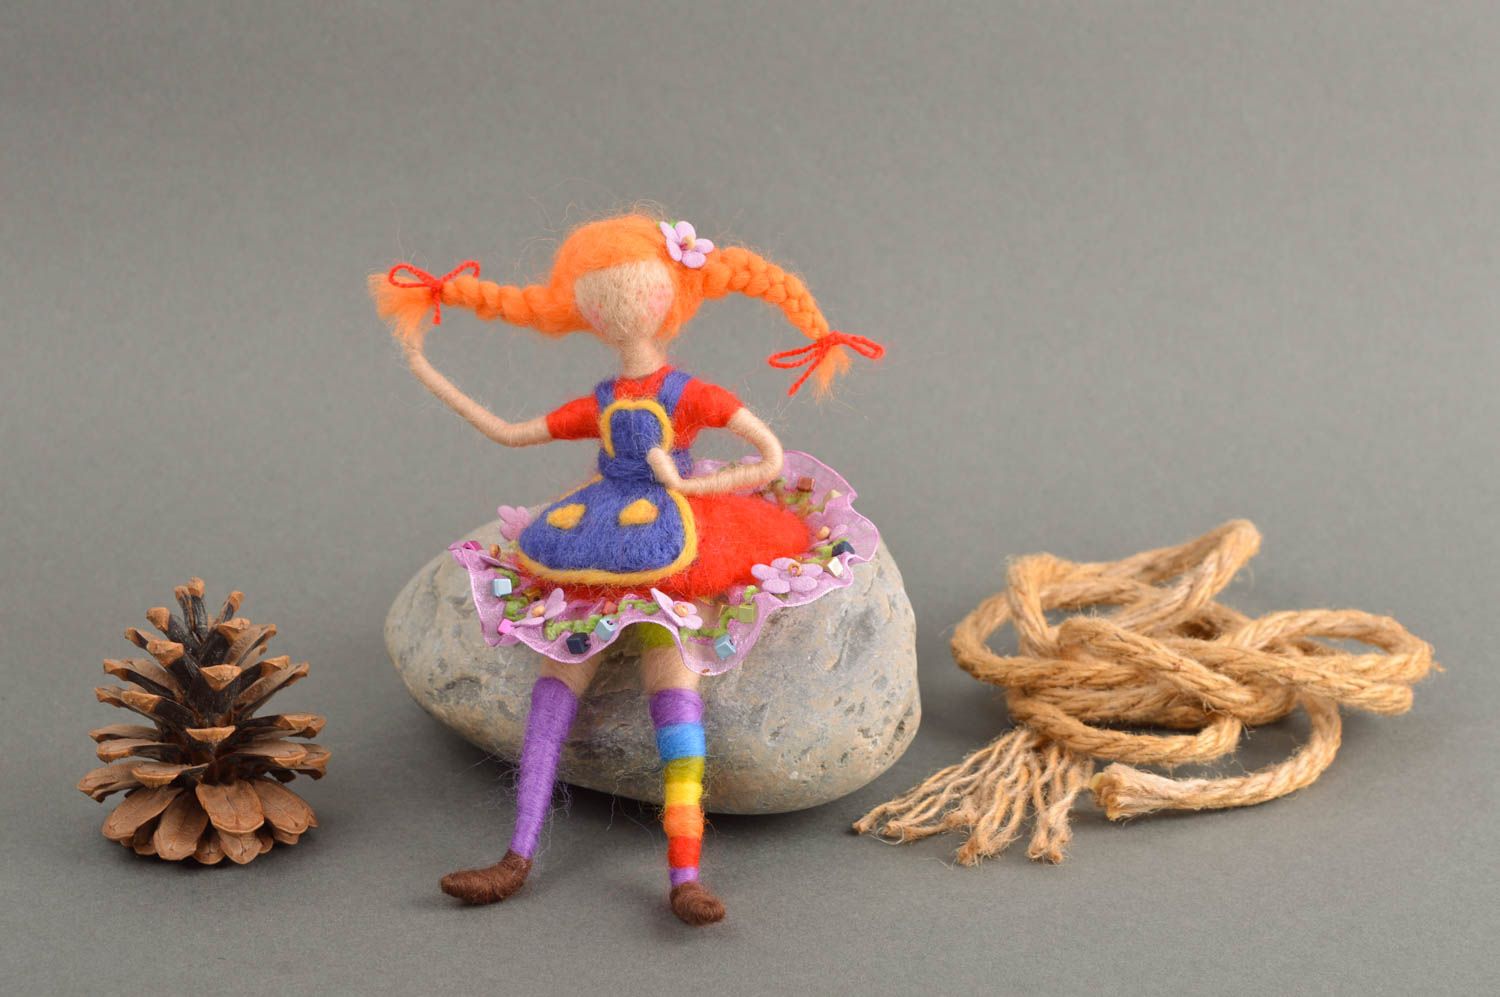 Валяная игрушка кукла ручной работы мягкая игрушка подарок ребенку девочка  фото 1